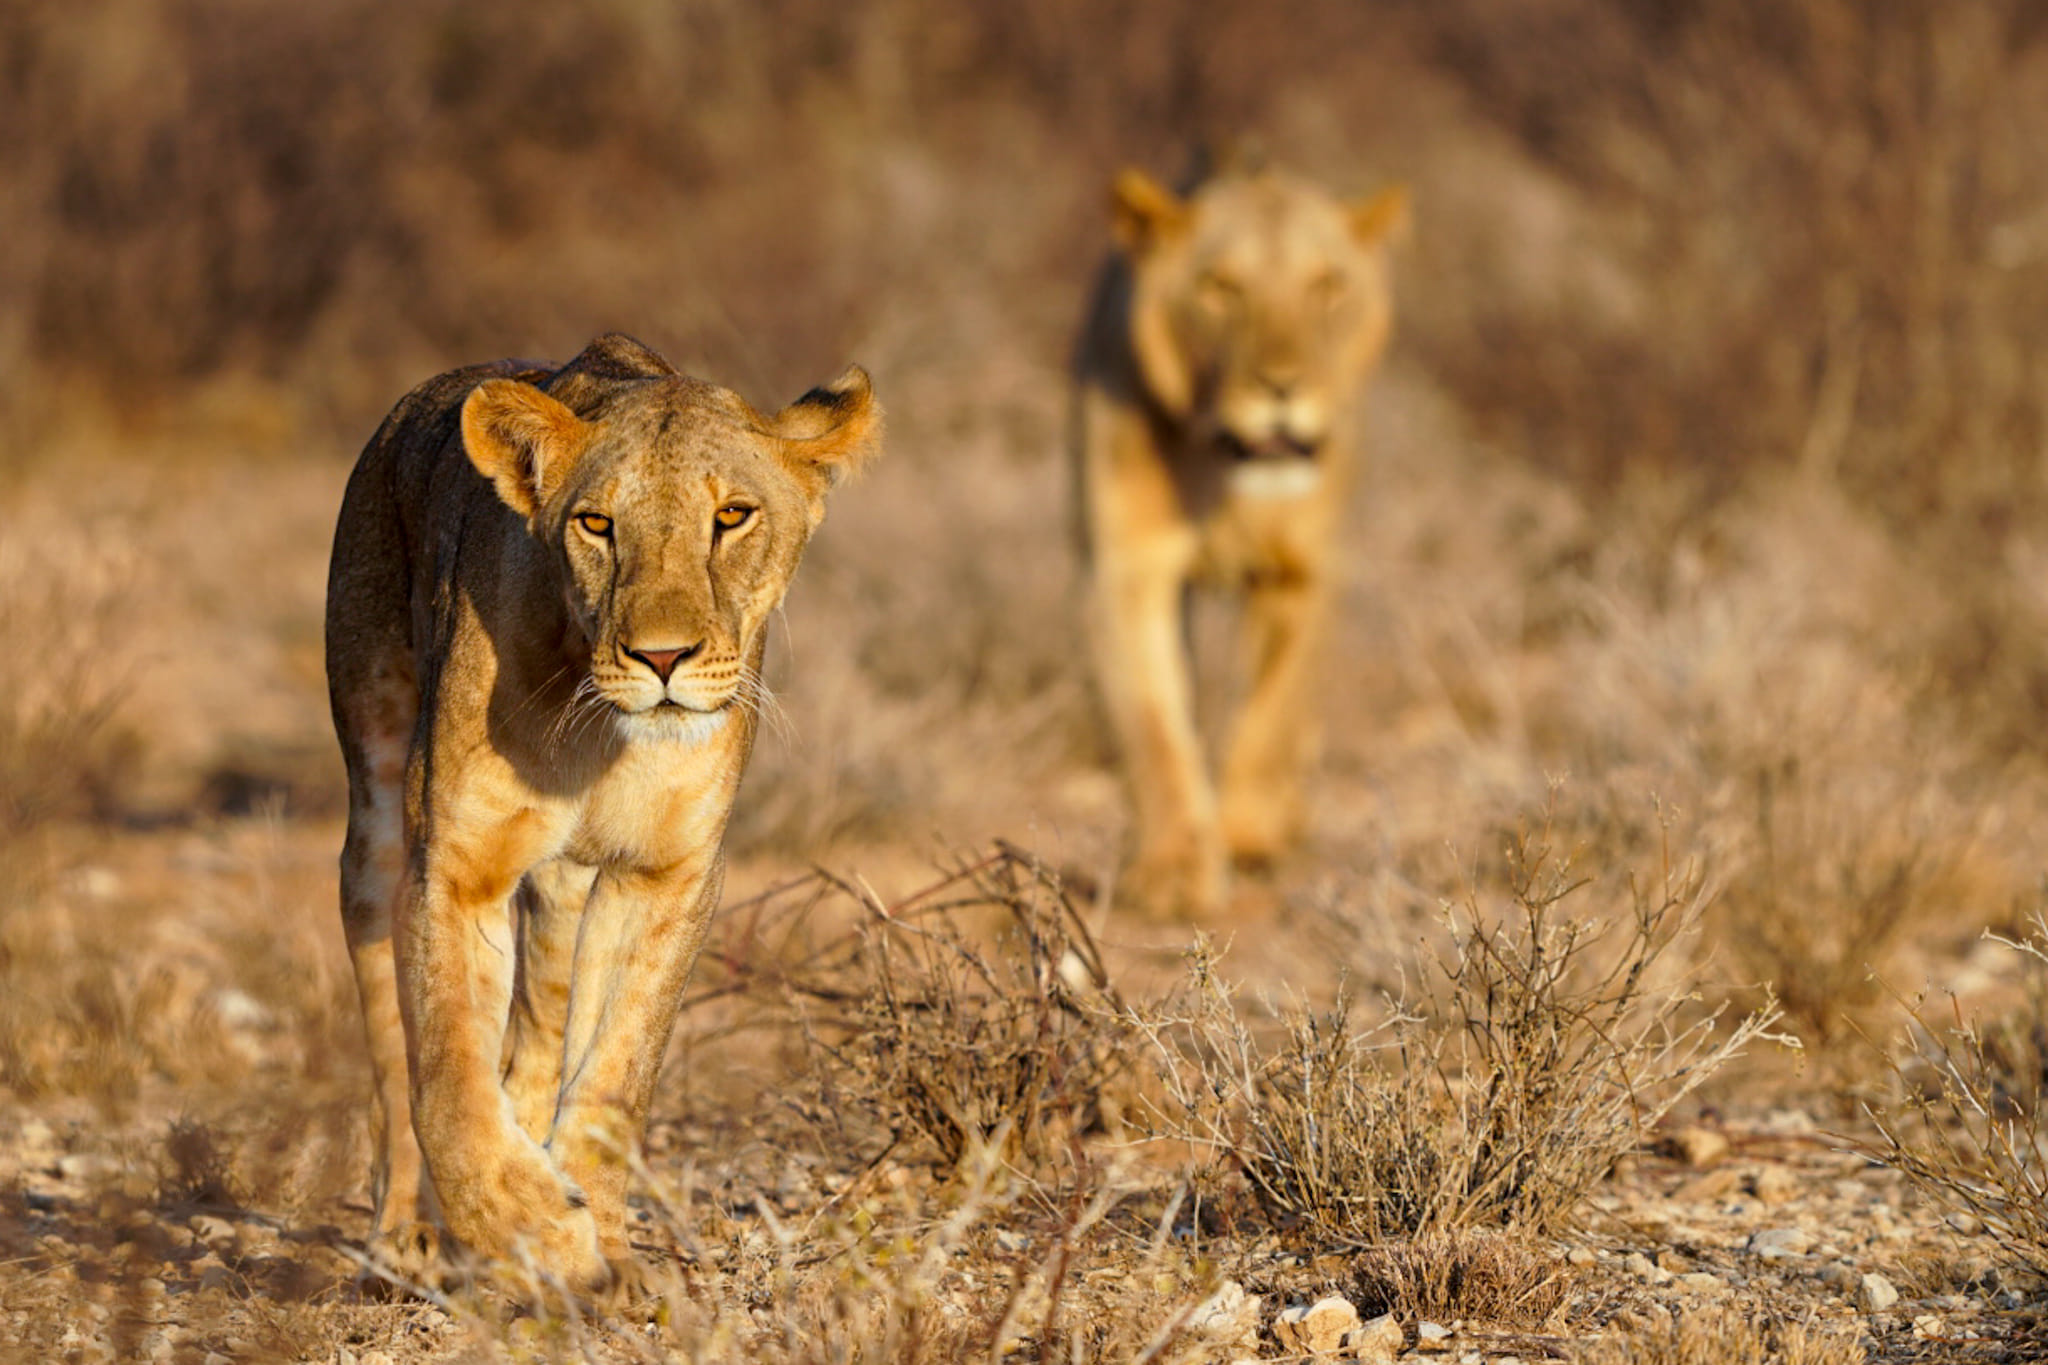 Wir beobachten die Leoparden in der Wildnis Kenias. Euch sende ich ein Löwenbild von gestern Nachmittag aus dem Samburu Nationalpark zu.